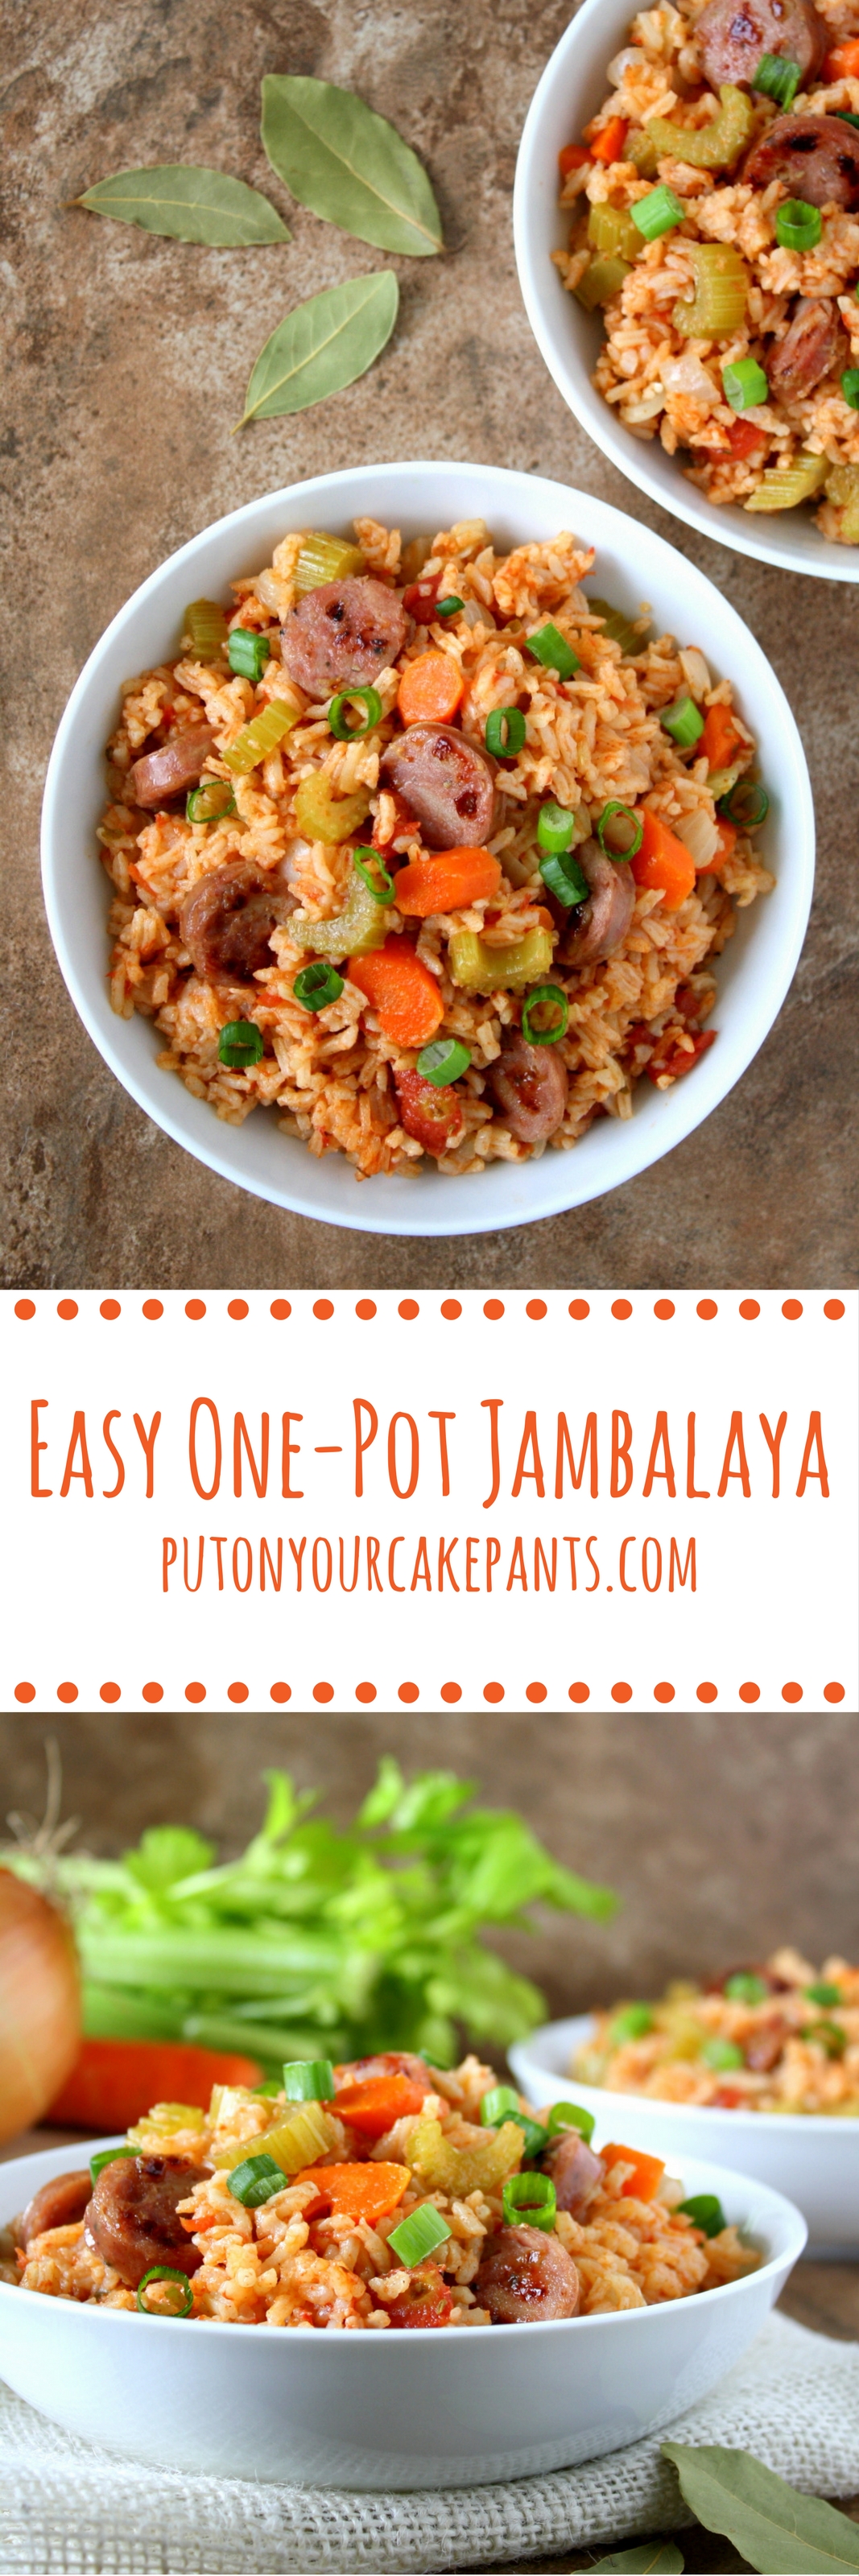 easy one-pot jambalaya